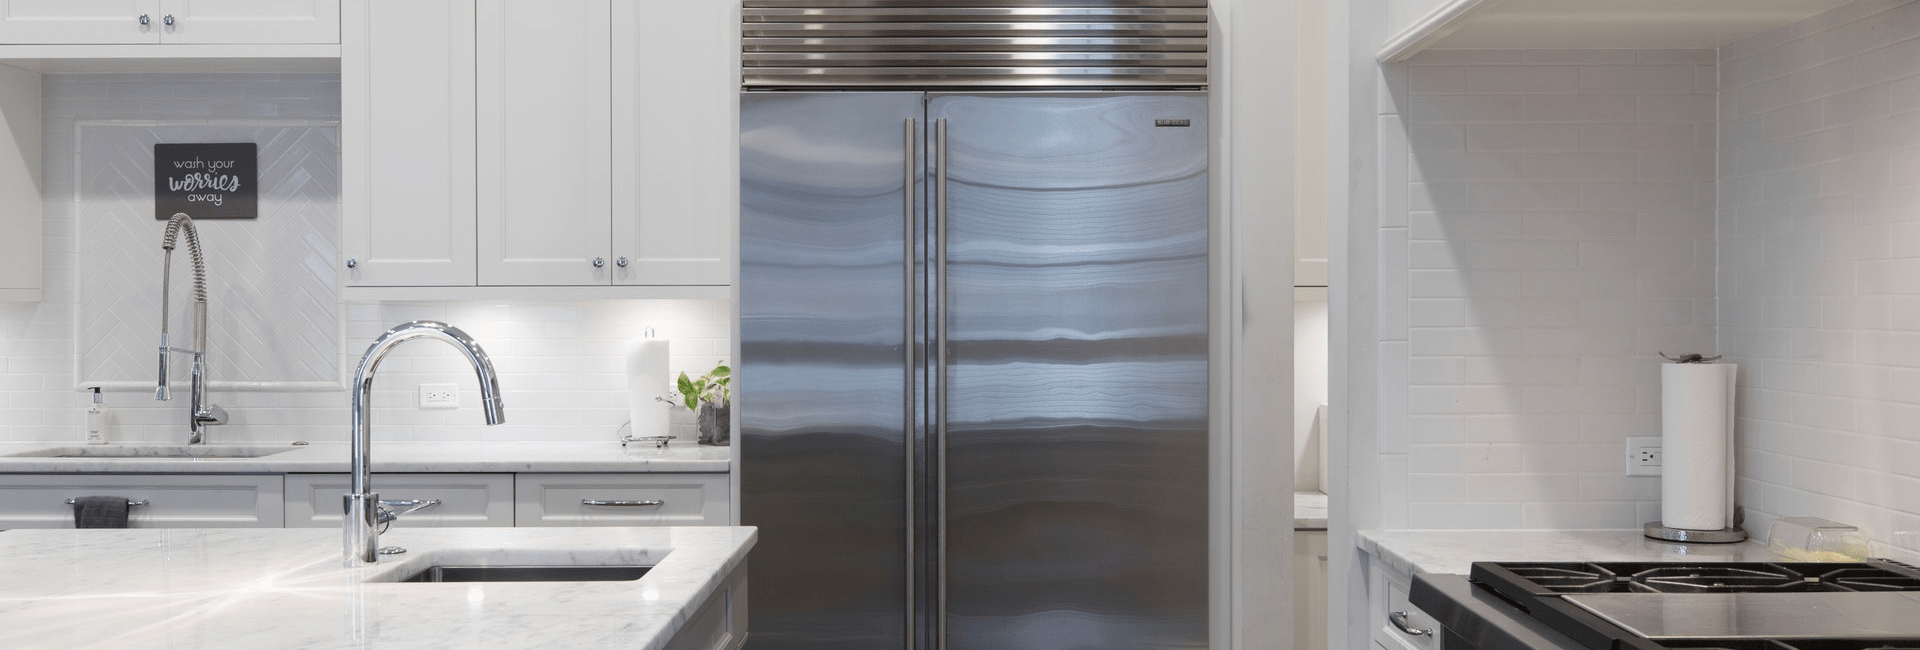 Refrigerator in Kitchen